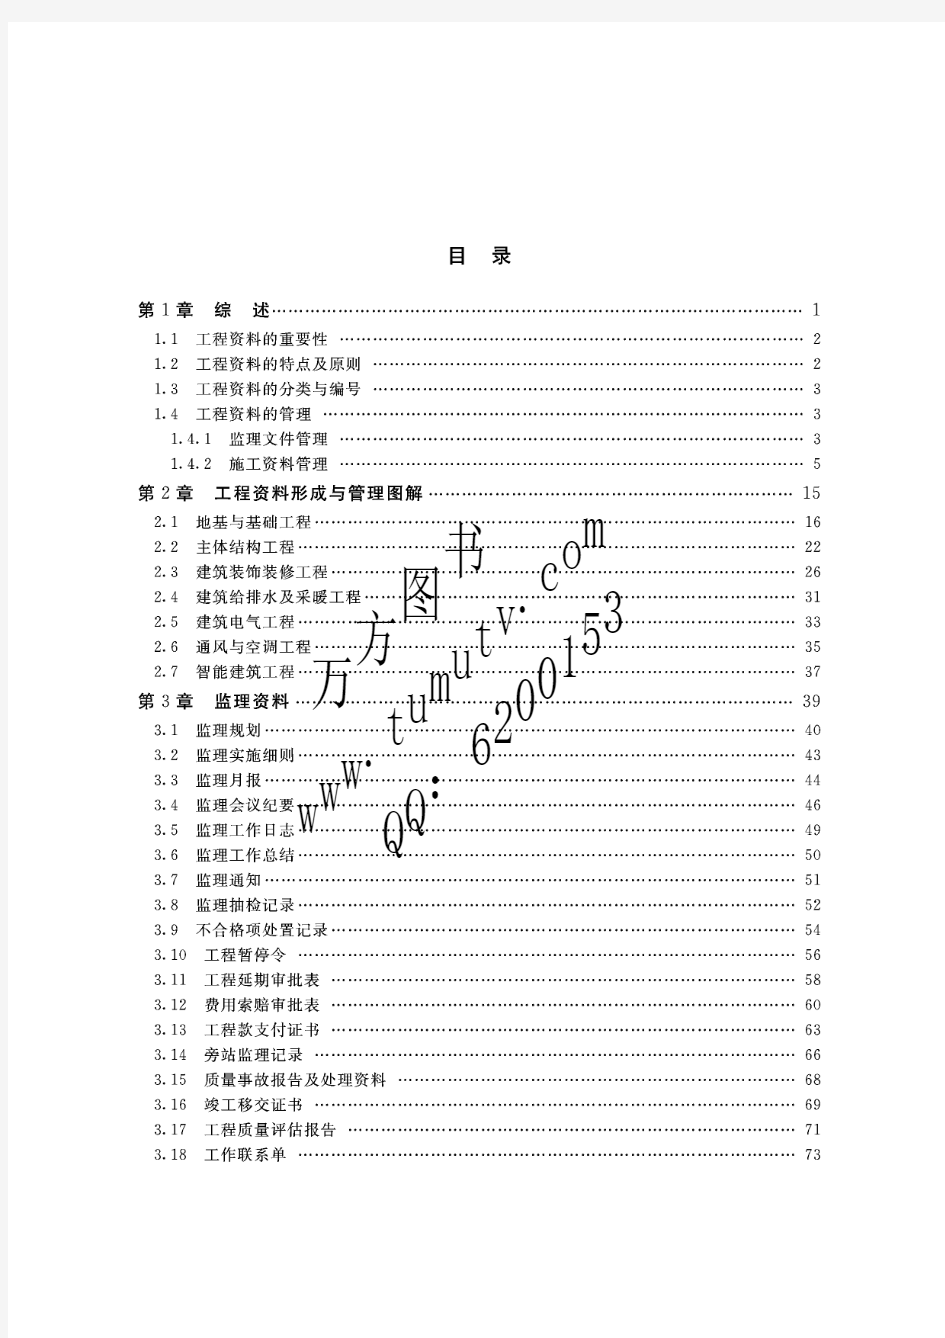 北京市建筑工程表格填写范例与指南上册